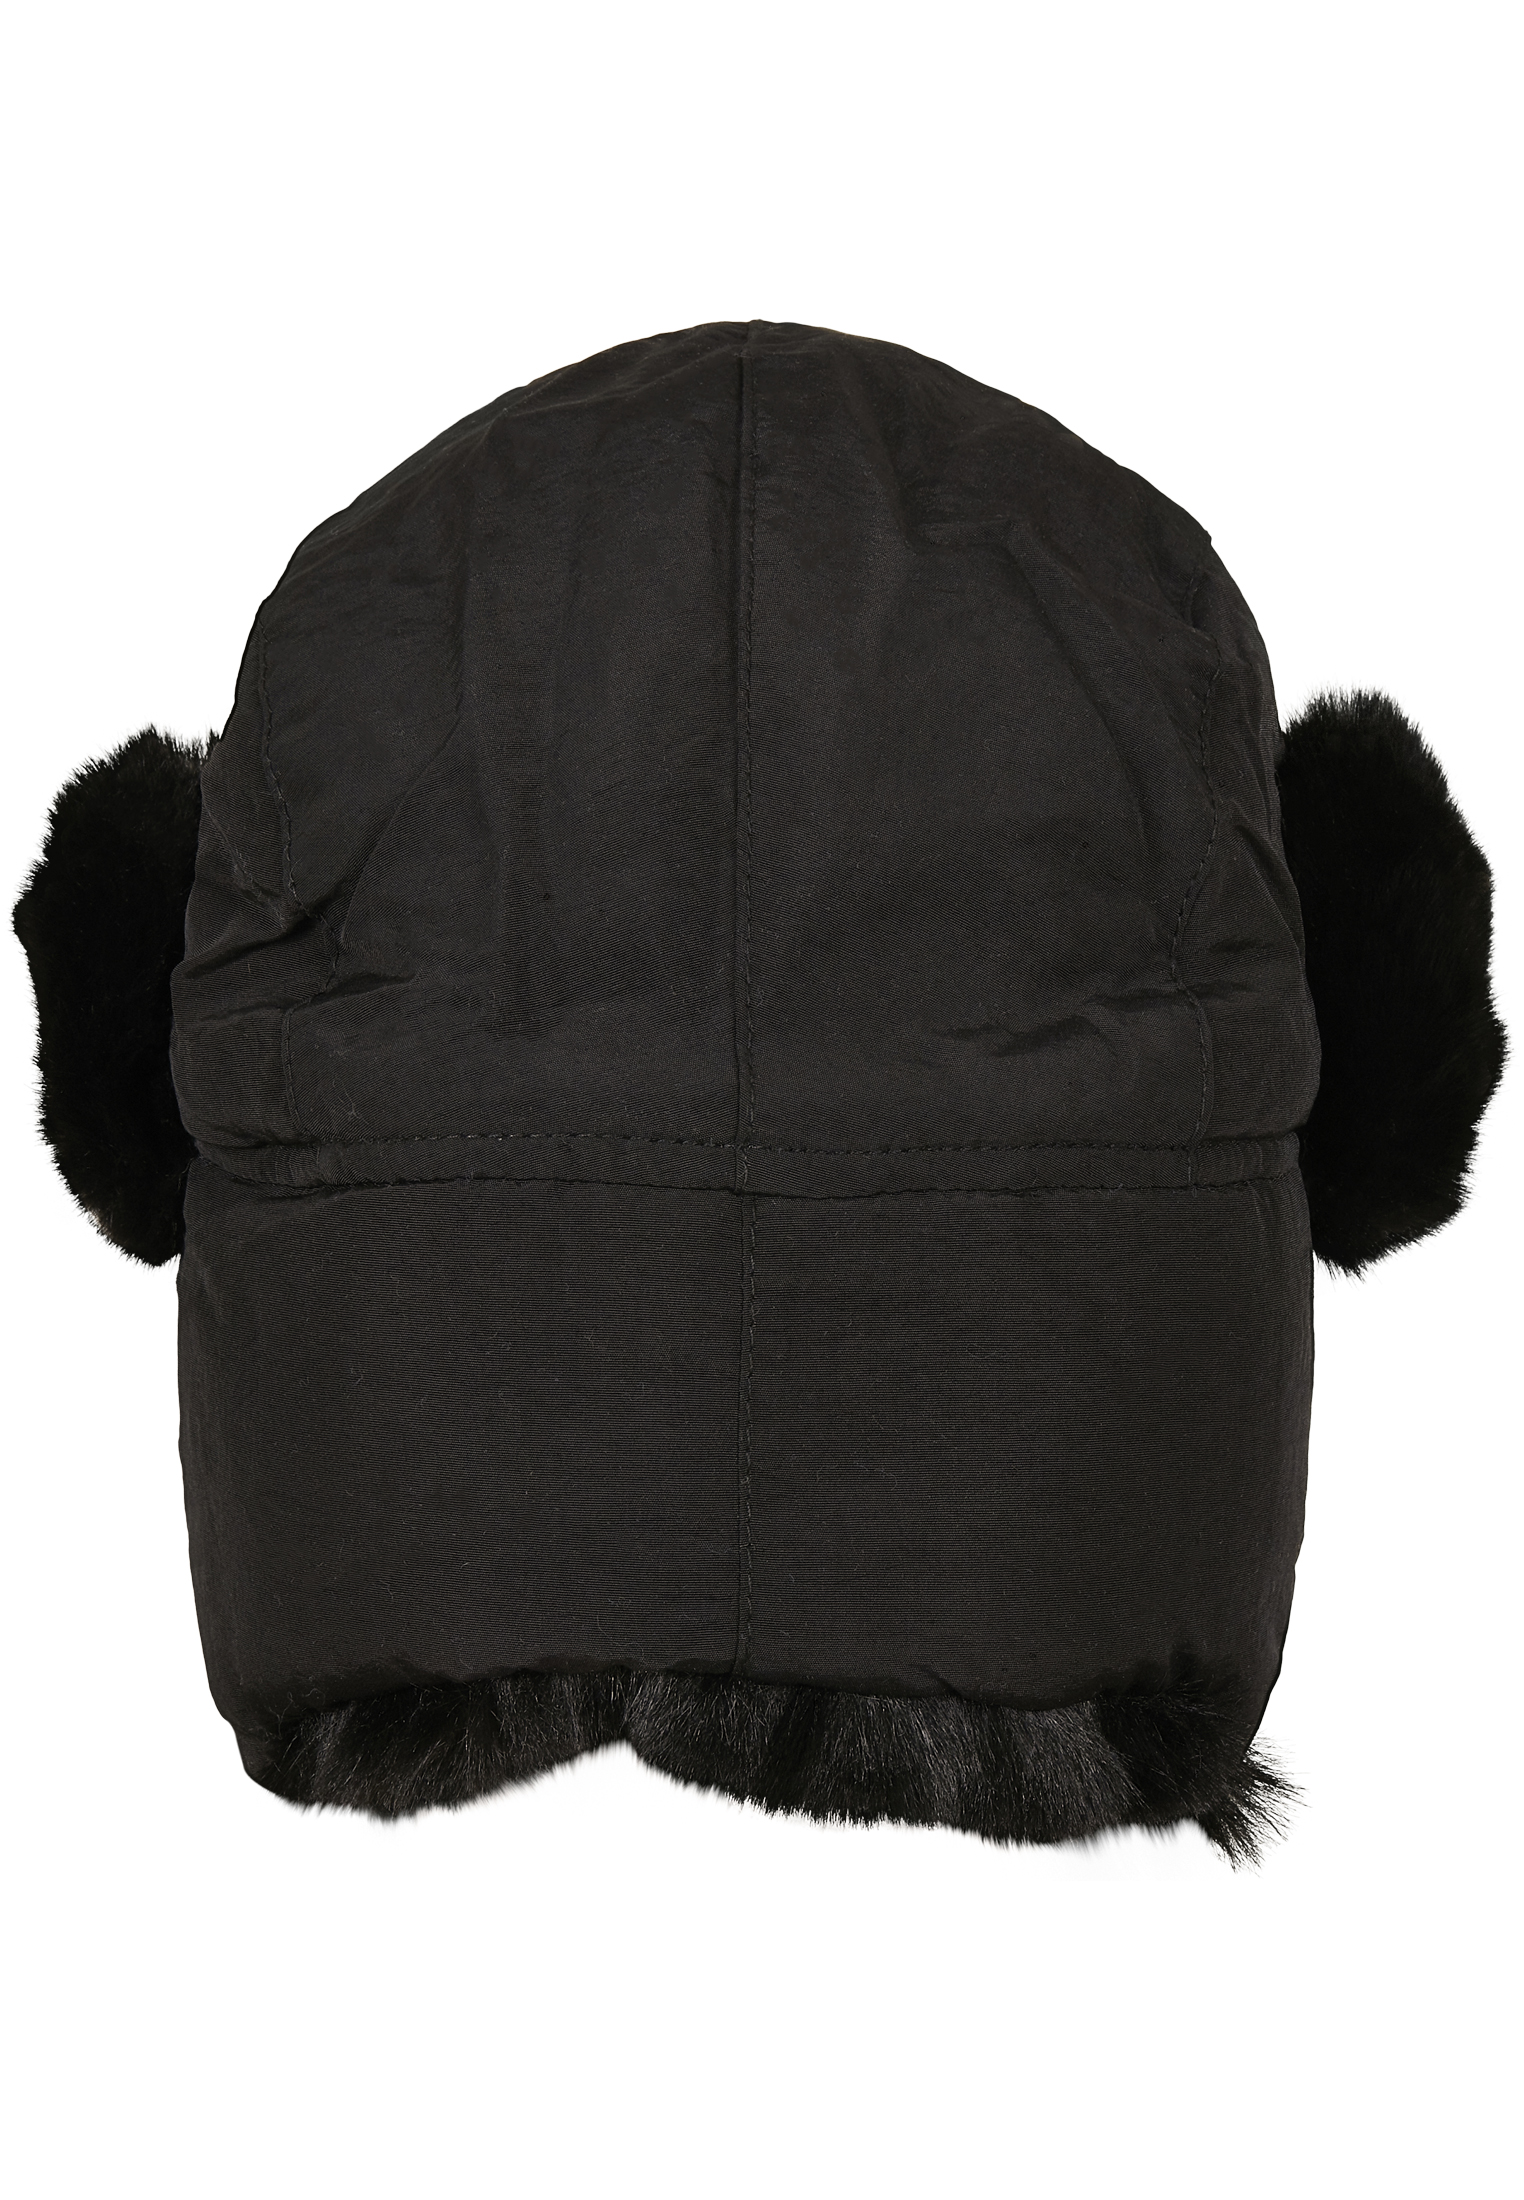 M?tzen Nylon Trapper Hat in Farbe black